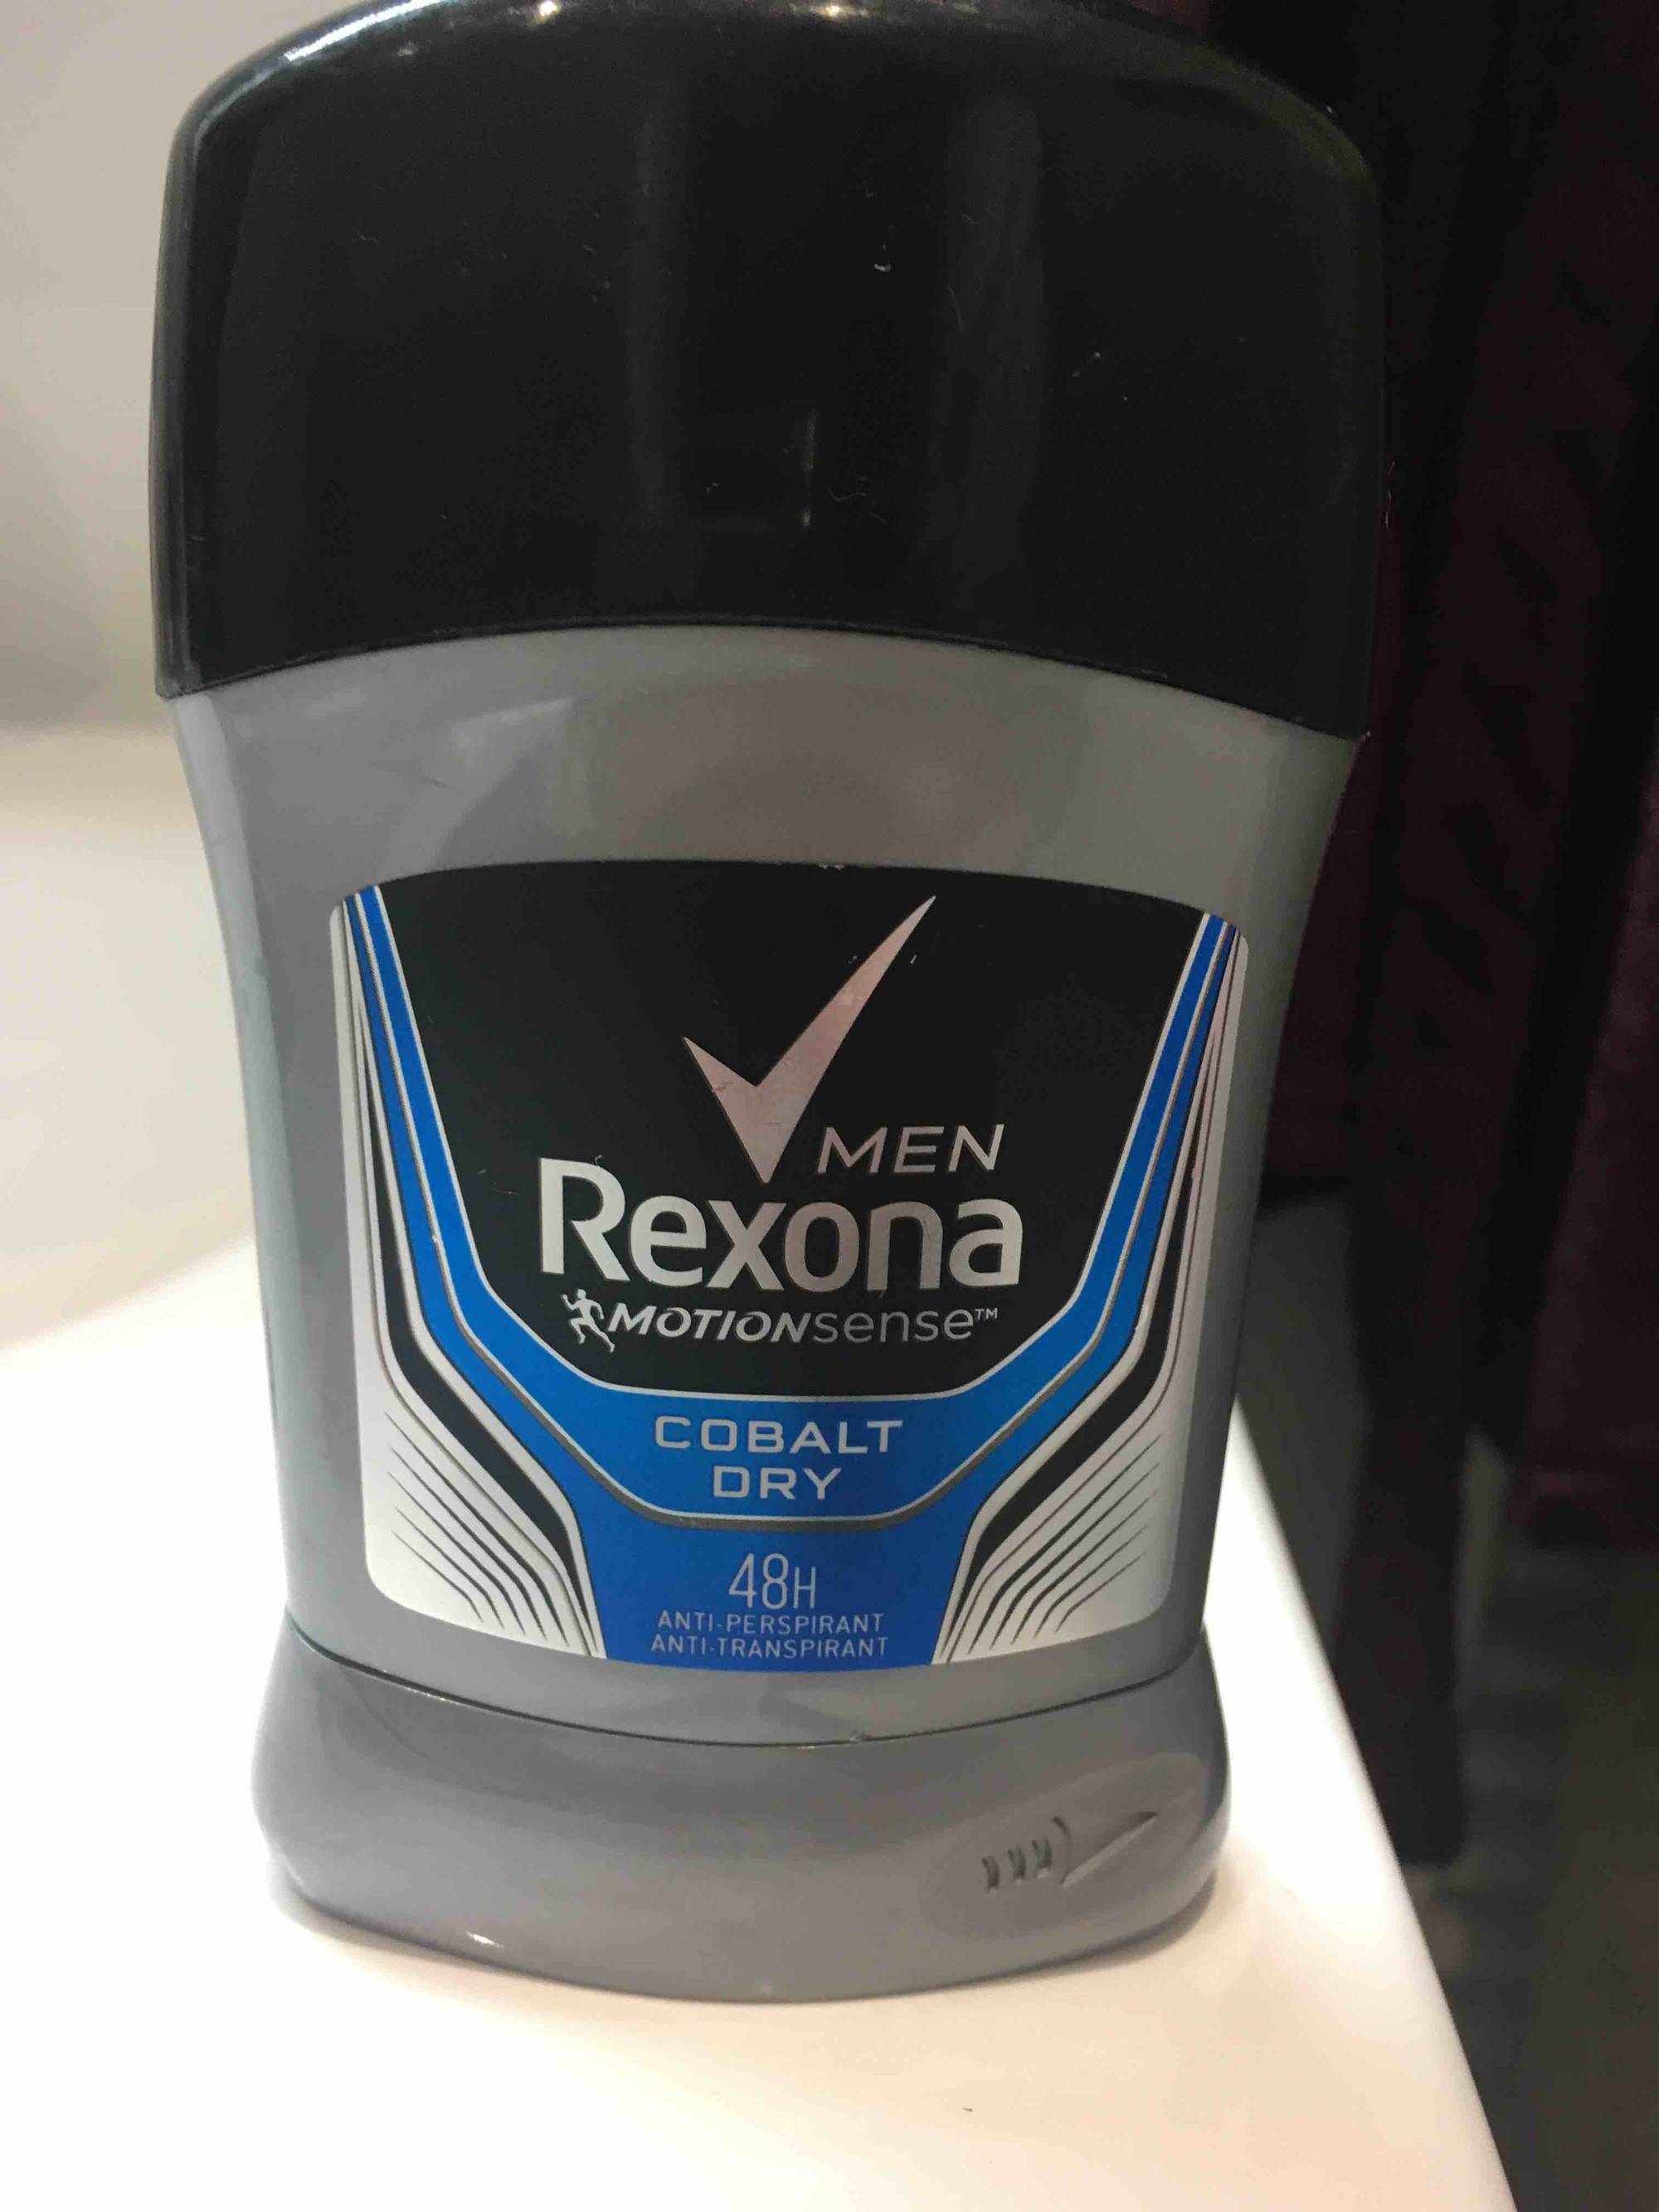 REXONA - Cobalt dry - Anti-perspirant men 48h